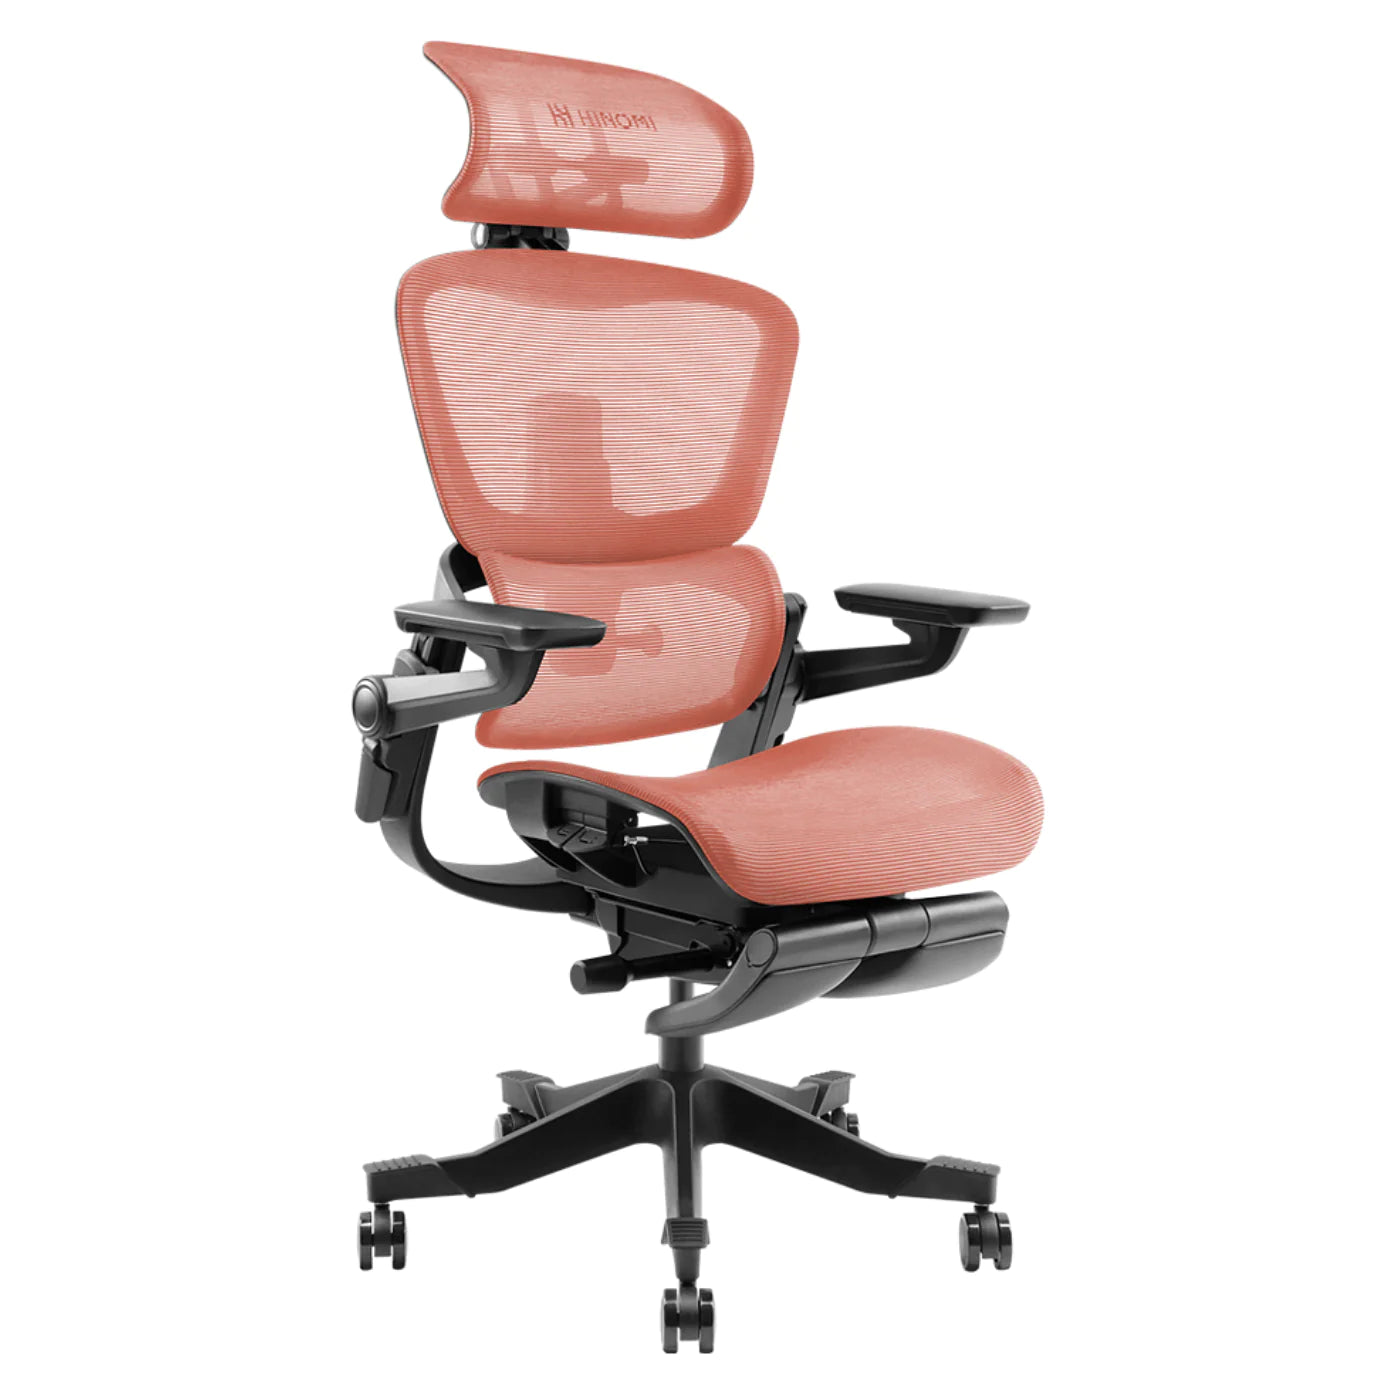 Hinomi H1 pro, la chaise de bureau ergonomique ultime ?